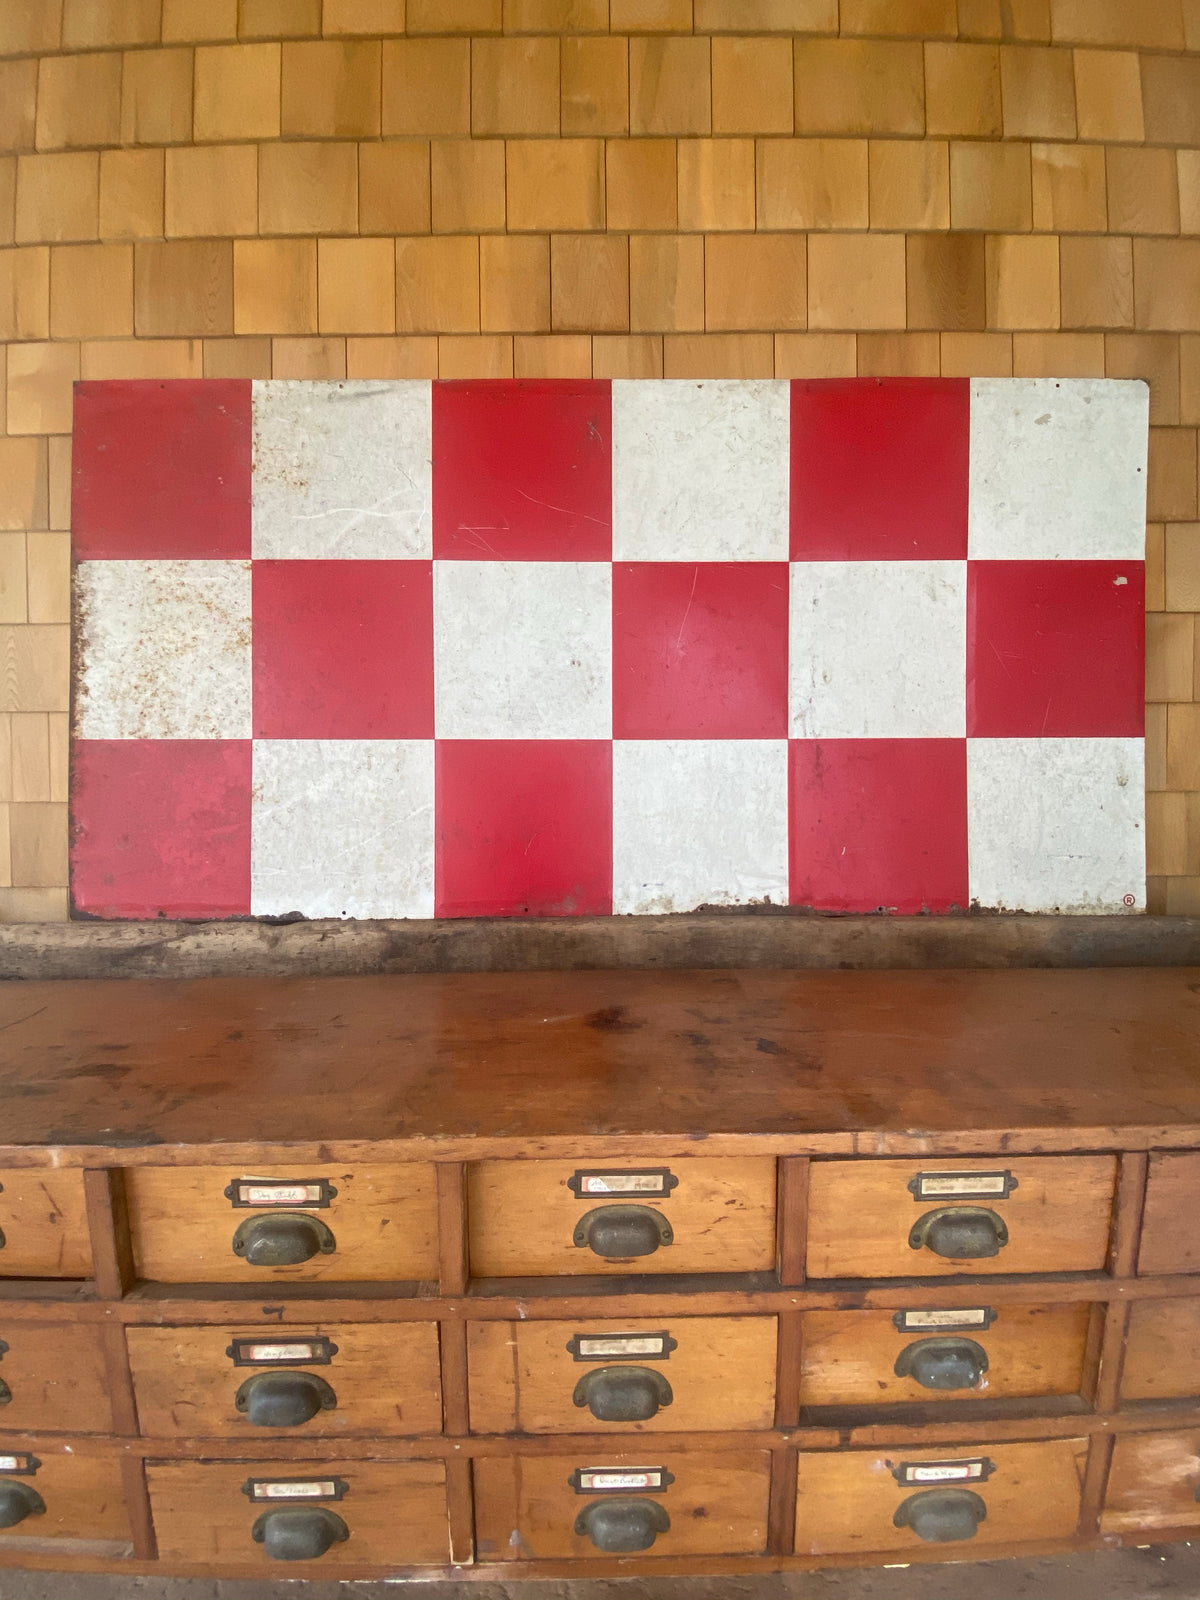 Vintage Checkerboard Metal Sign